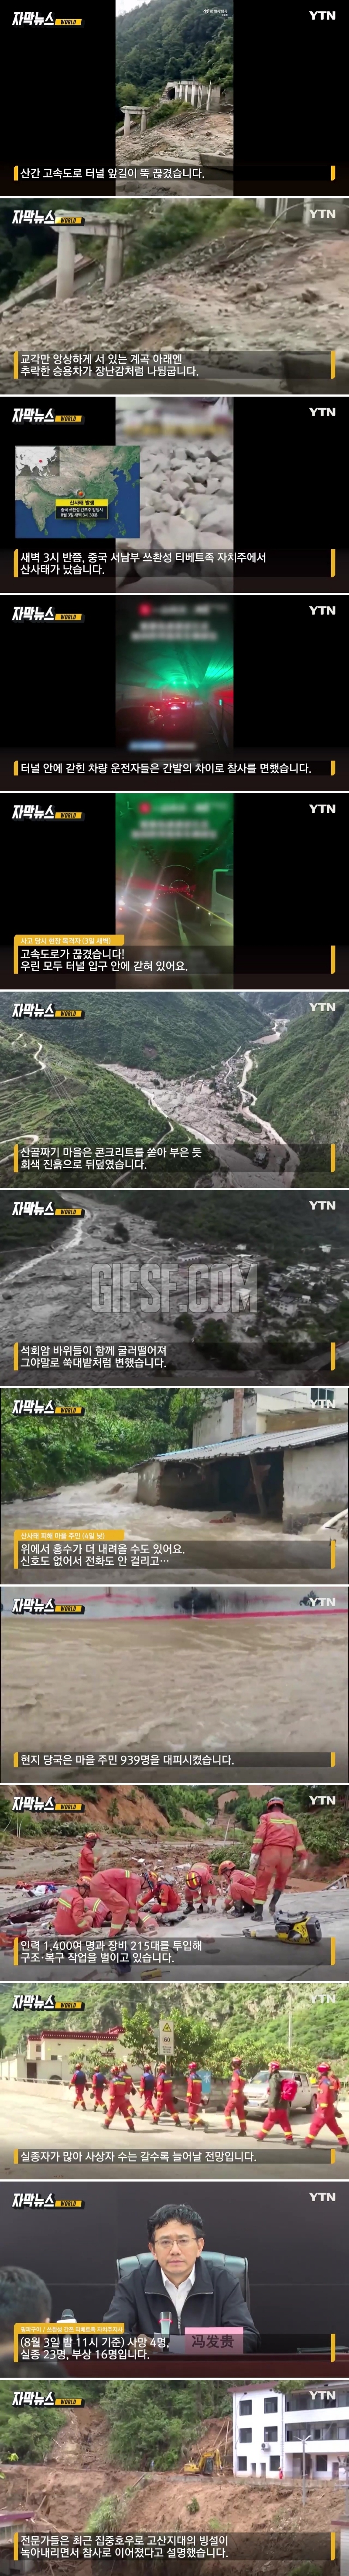 회색 진흙으로 뒤덮인 마을.中 산사태 27명 사망·실종.jpg